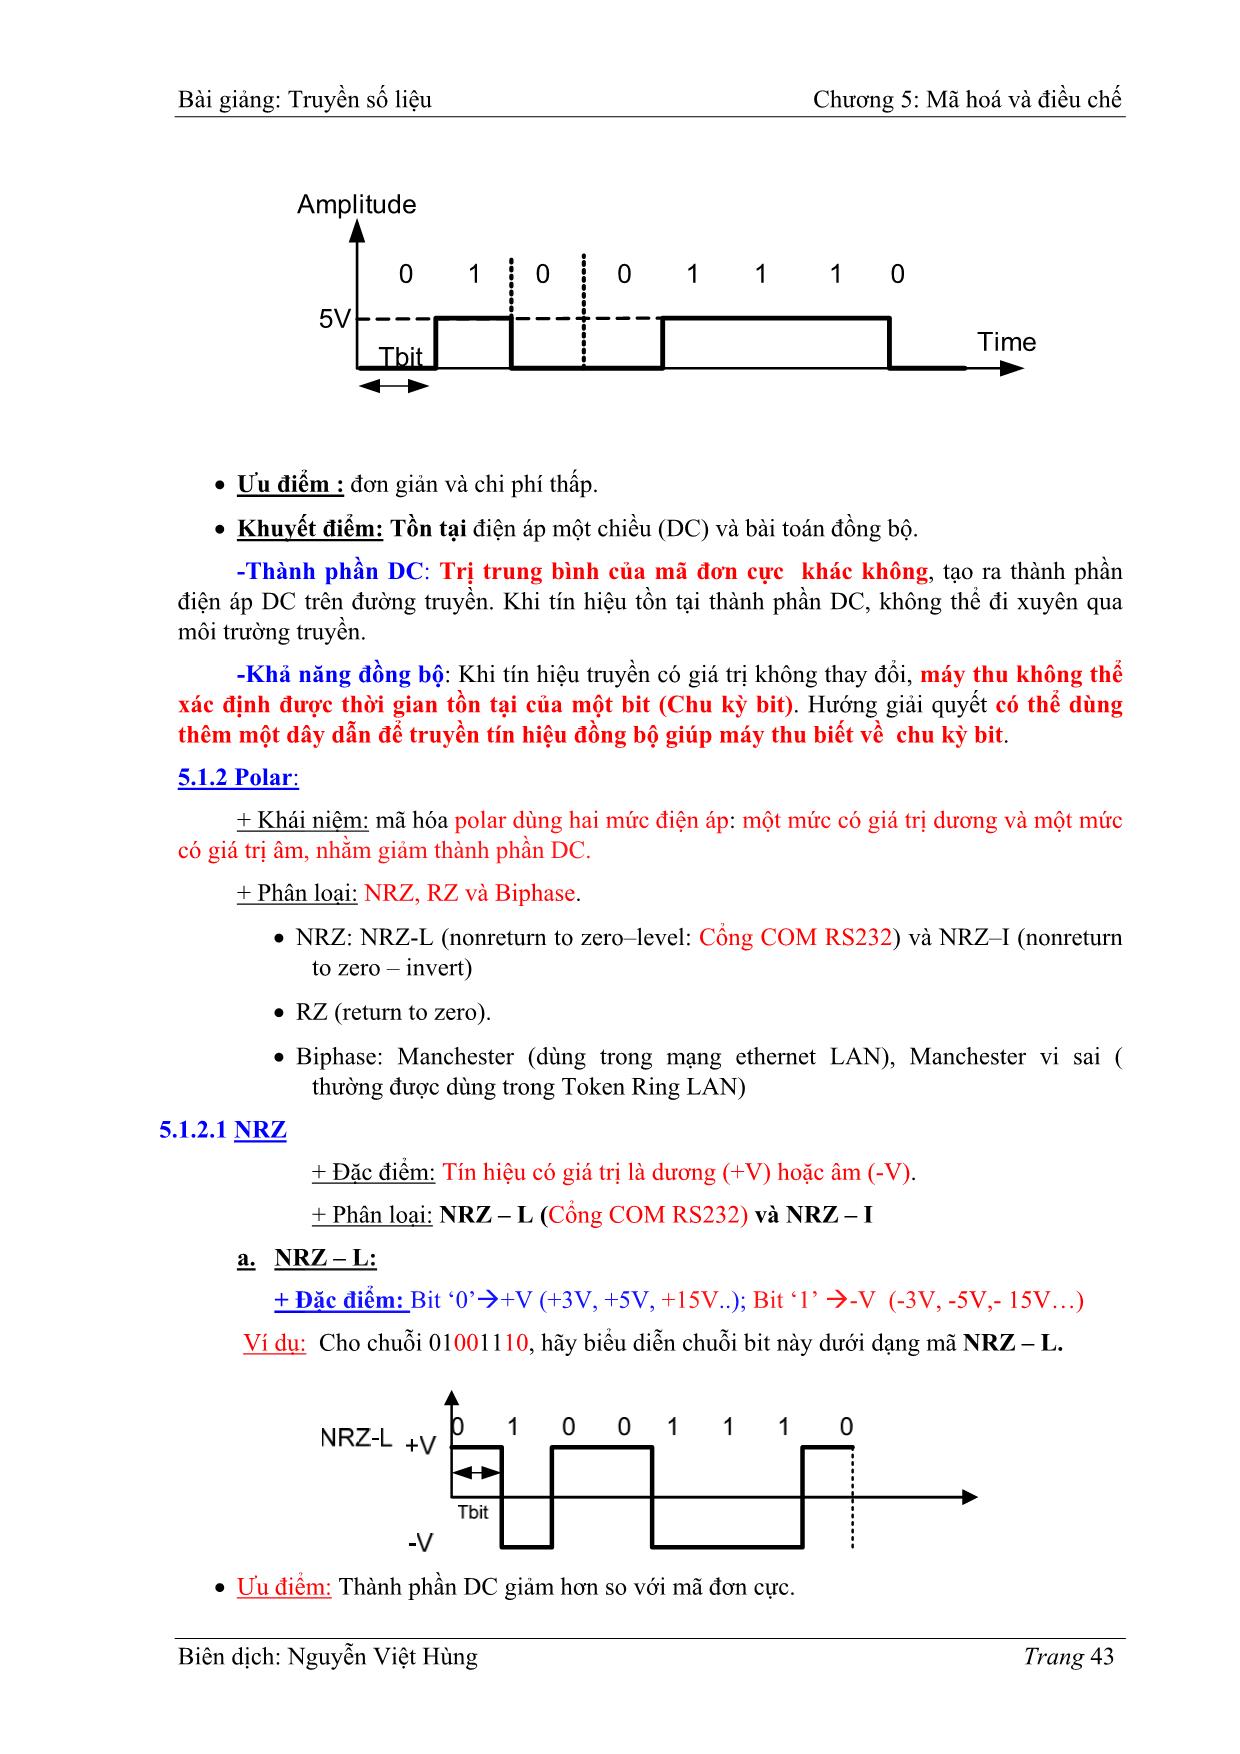 Bài giảng Truyền số liệu - Chương 5: Mã hoá và điều chế - Nguyễn Việt Hùng trang 2